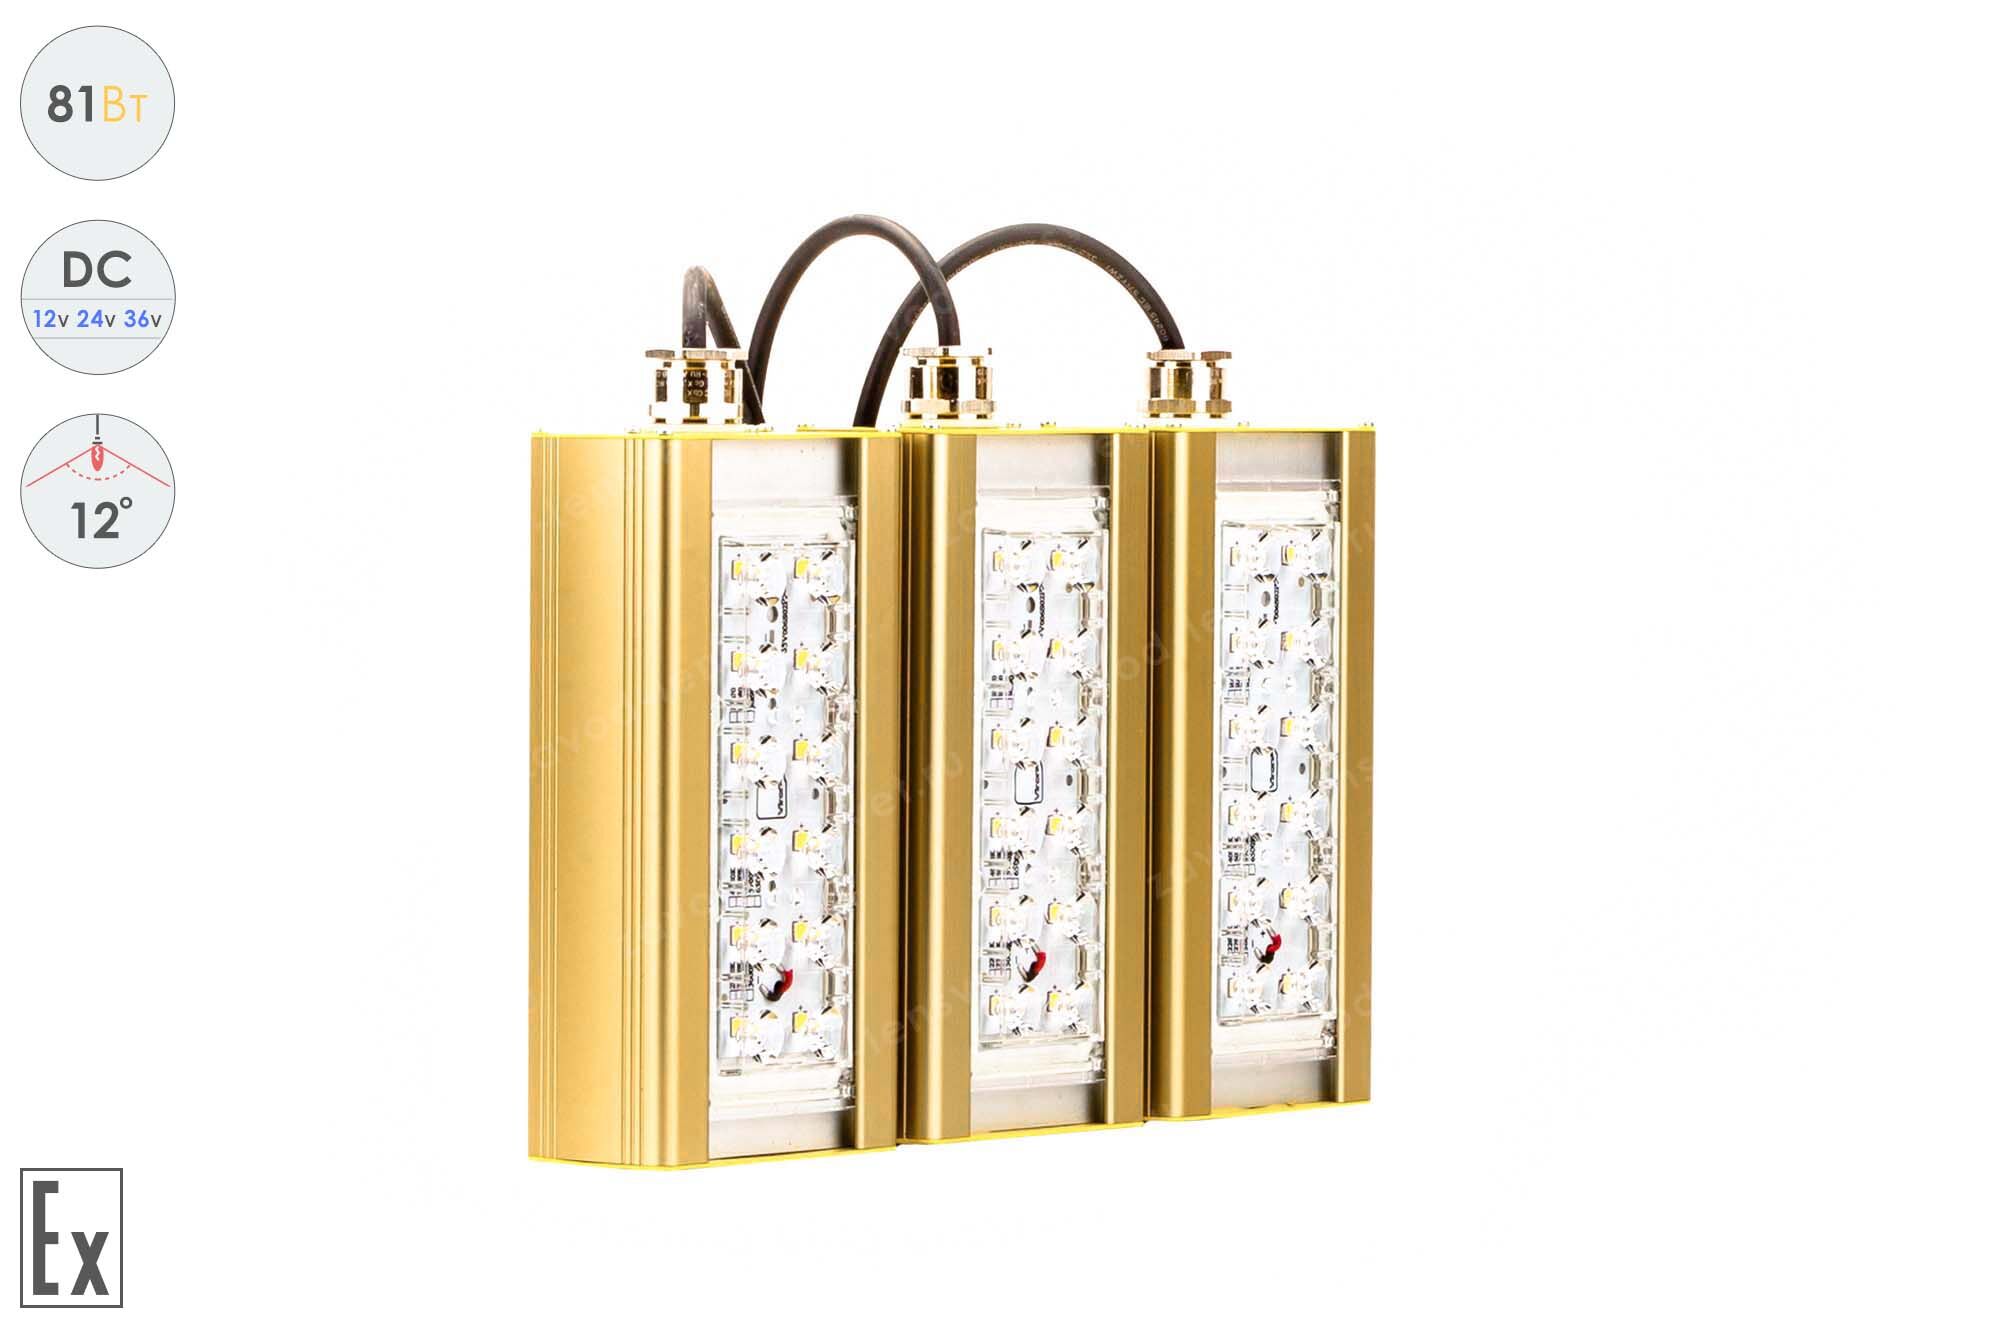 Светодиодный светильник Низковольтный Прожектор Взрывозащищенный GOLD, консоль K-3, 81 Вт, 12°